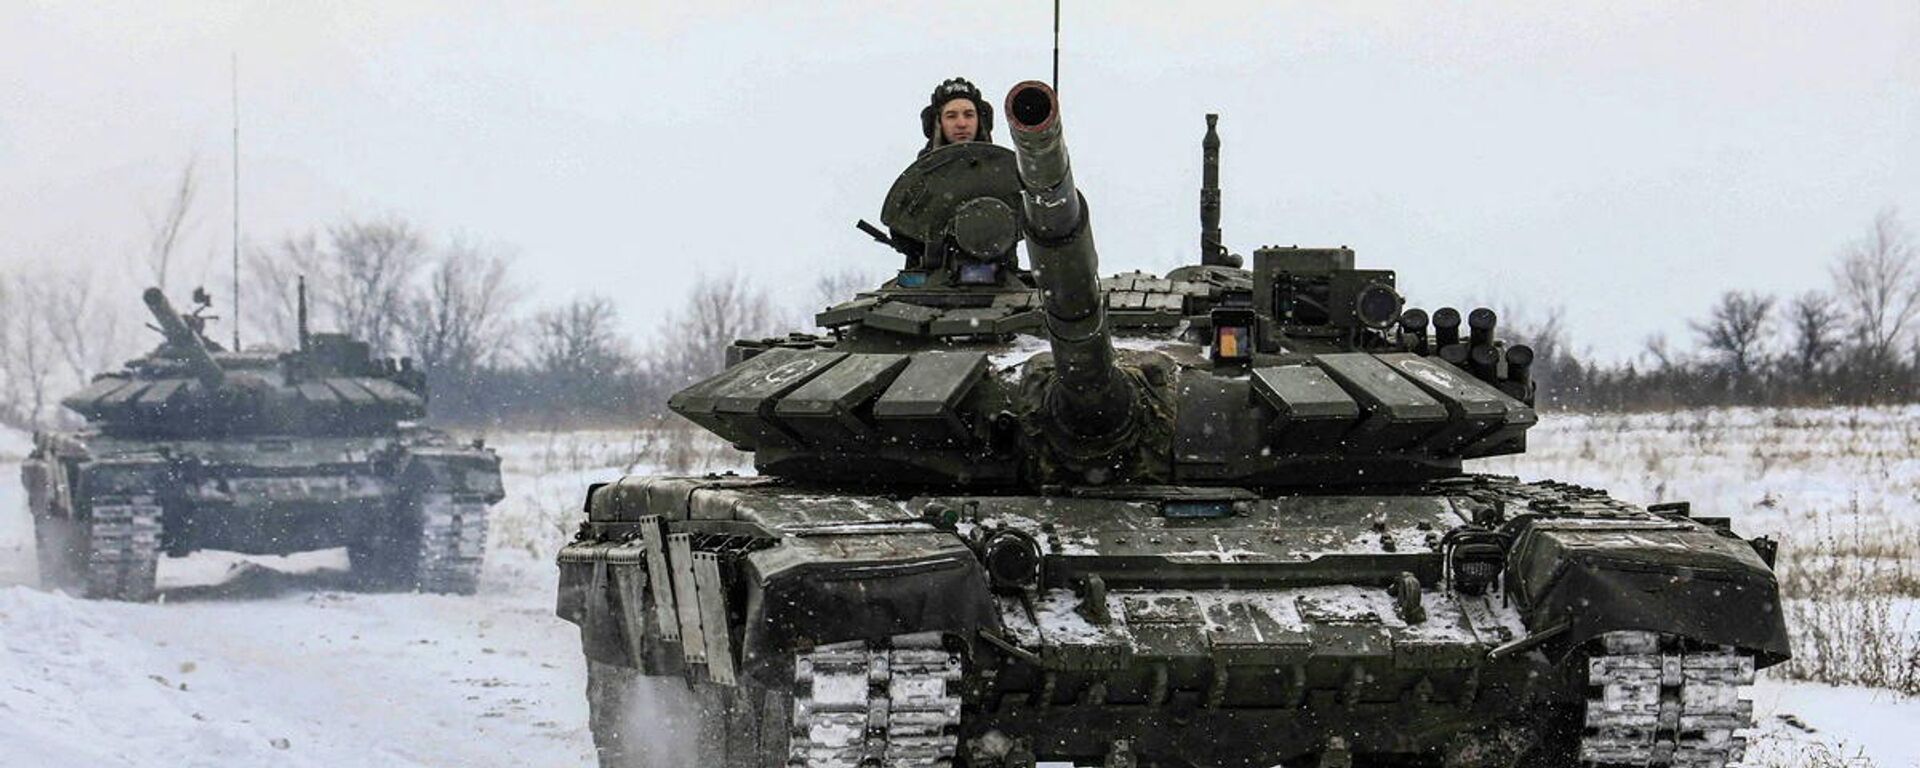 الجنود الروس يقودون الدبابات خلال التدريبات العسكرية في منطقة لينينغراد، روسيا، 14 فبراير 2022. - سبوتنيك عربي, 1920, 24.02.2022